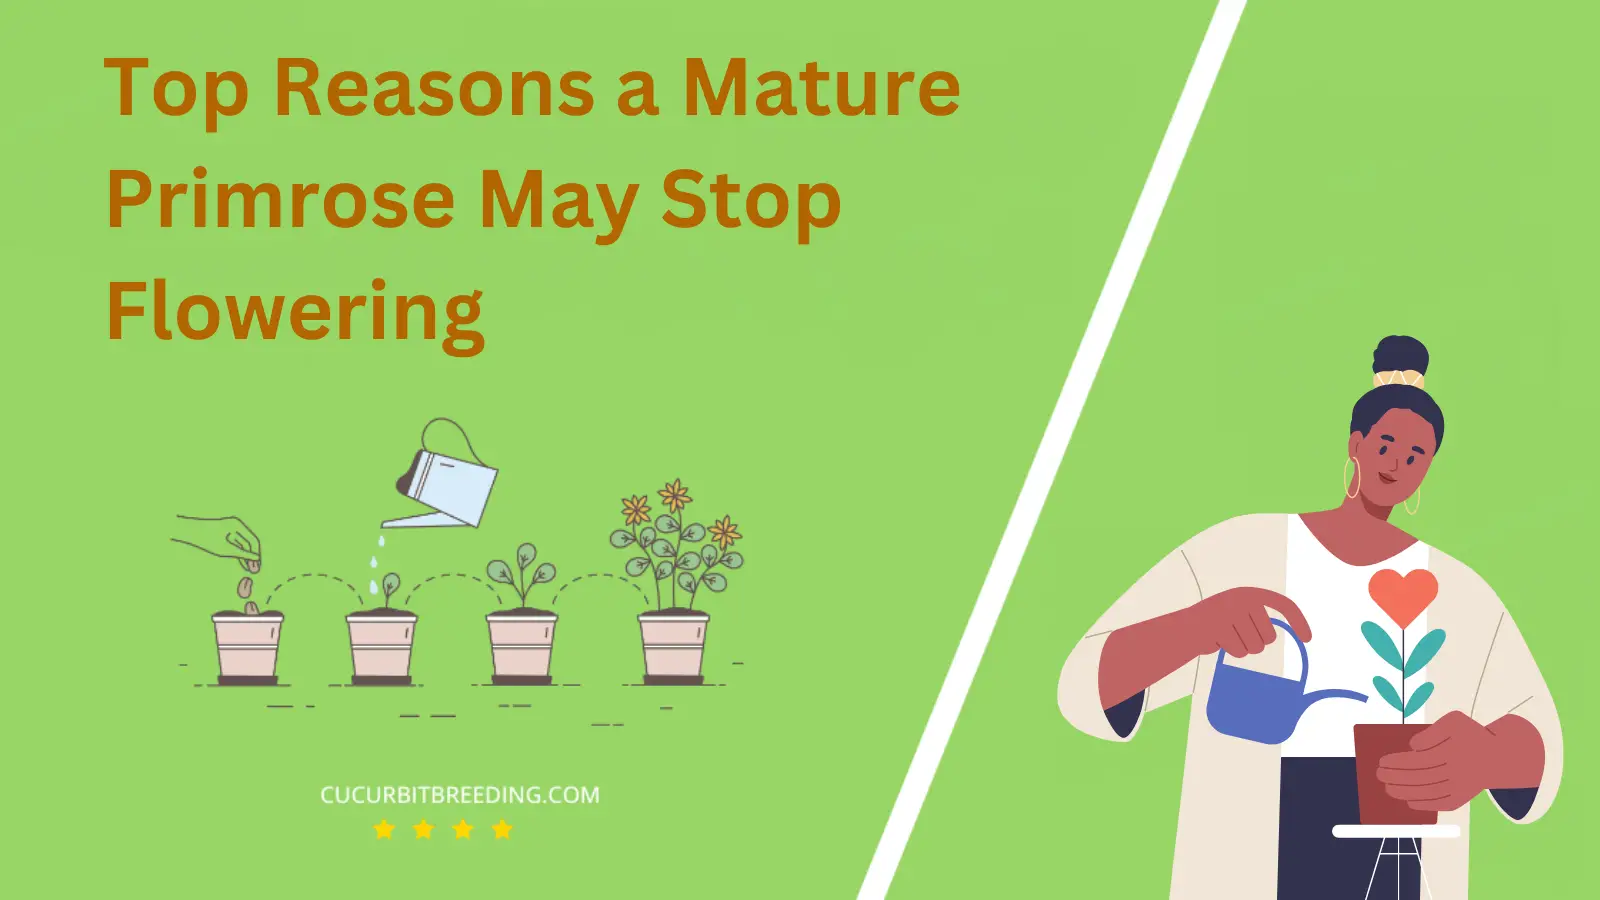 Top Reasons a Mature Primrose May Stop Flowering